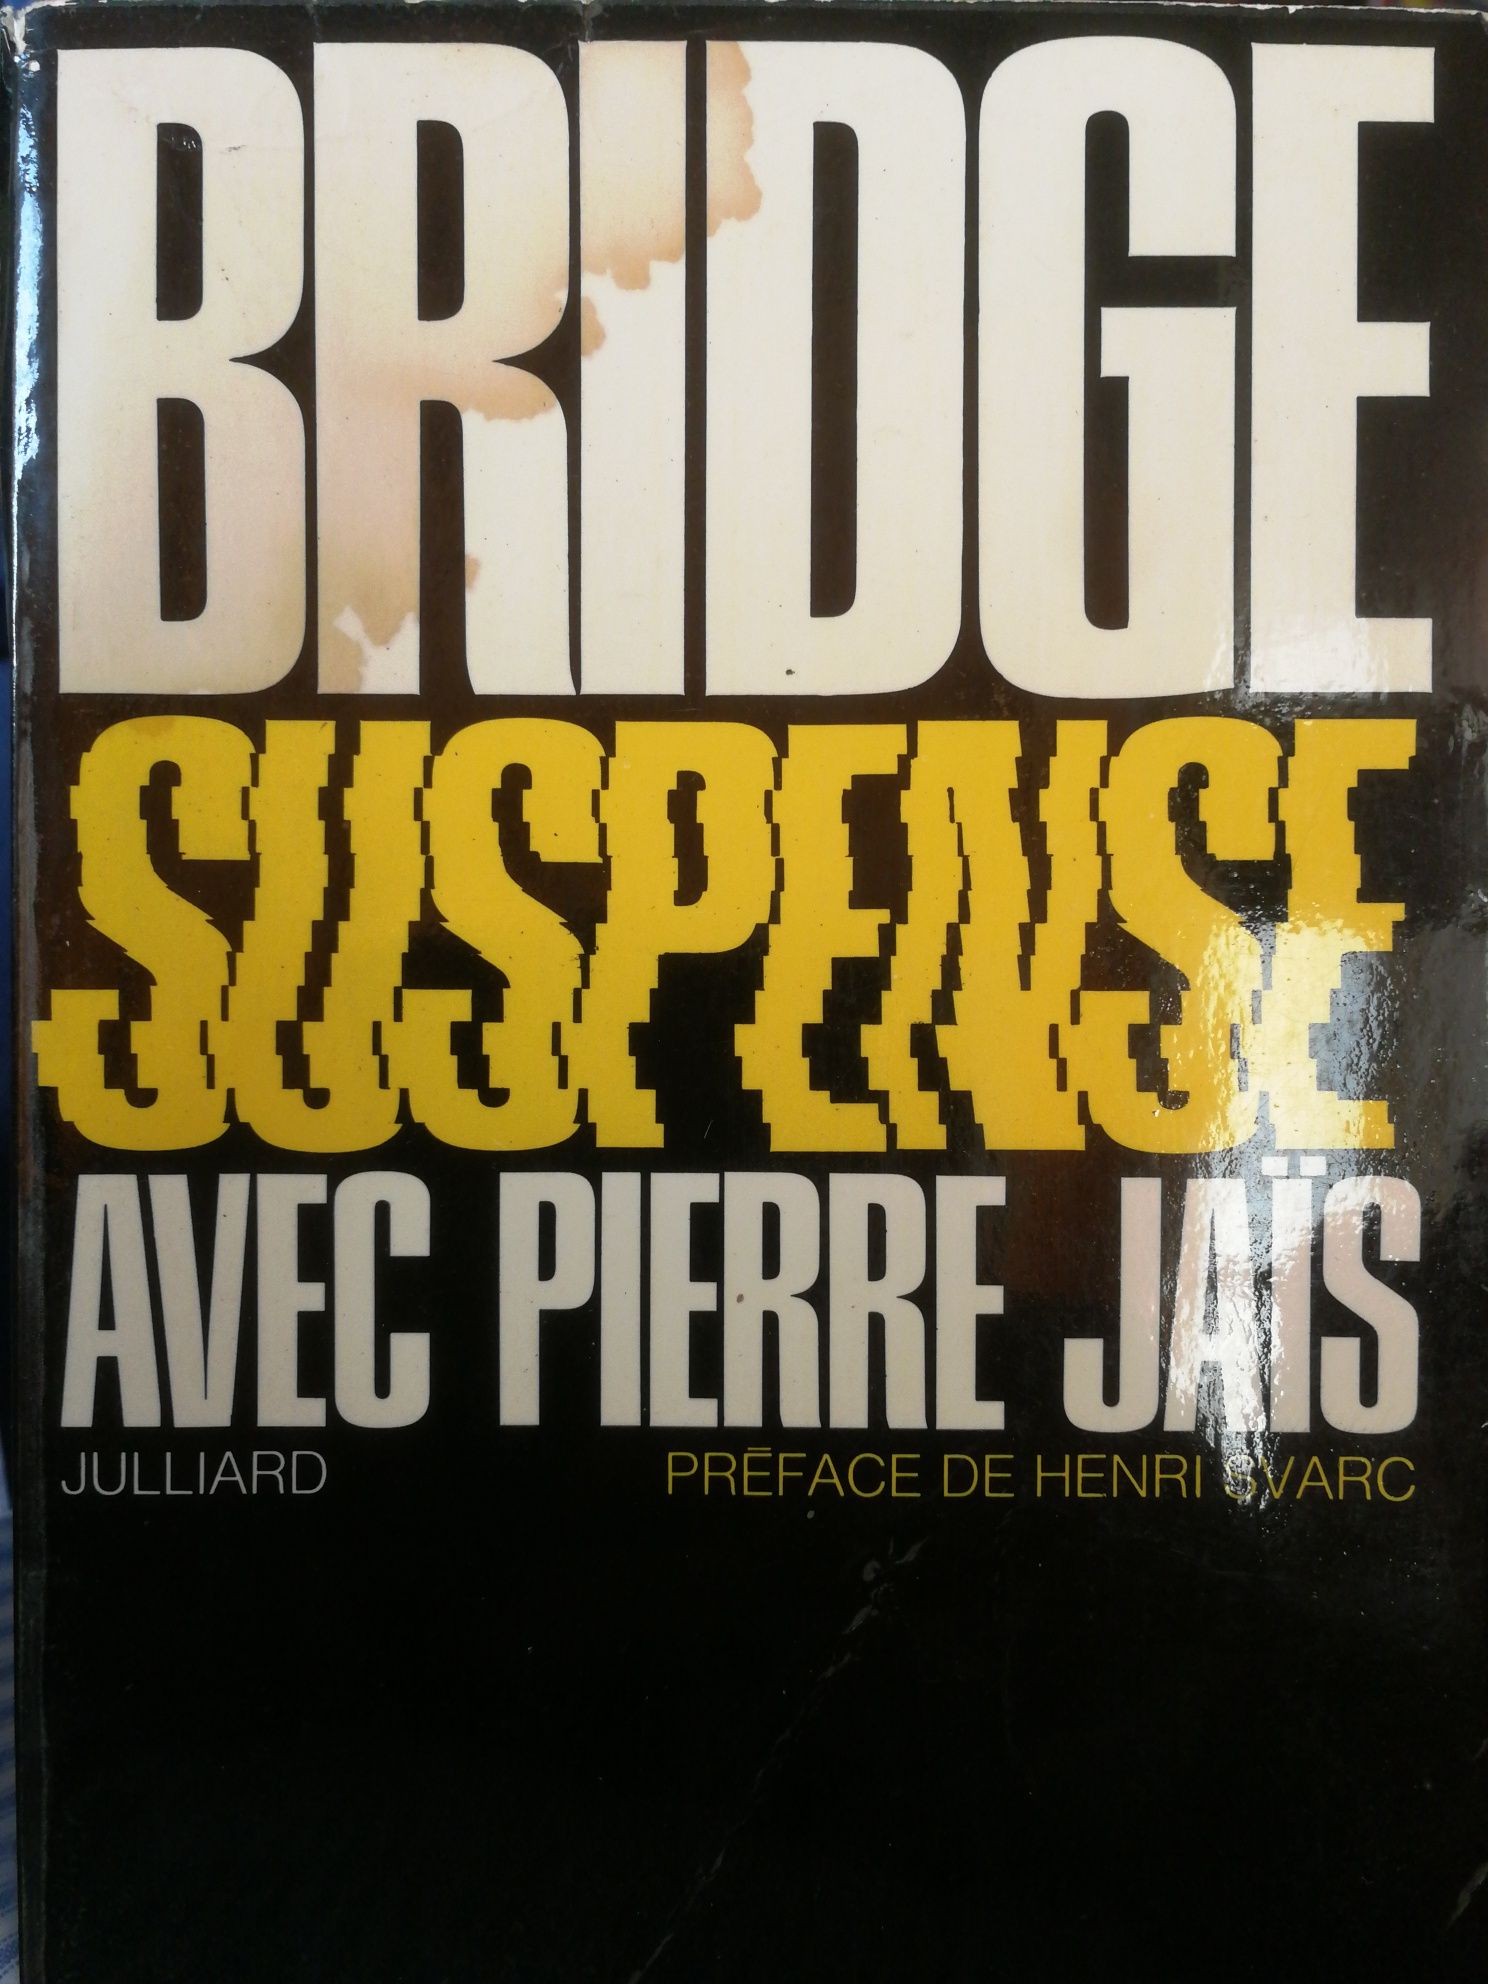 Livro de Bridge - BRIDGE SUSPENSE